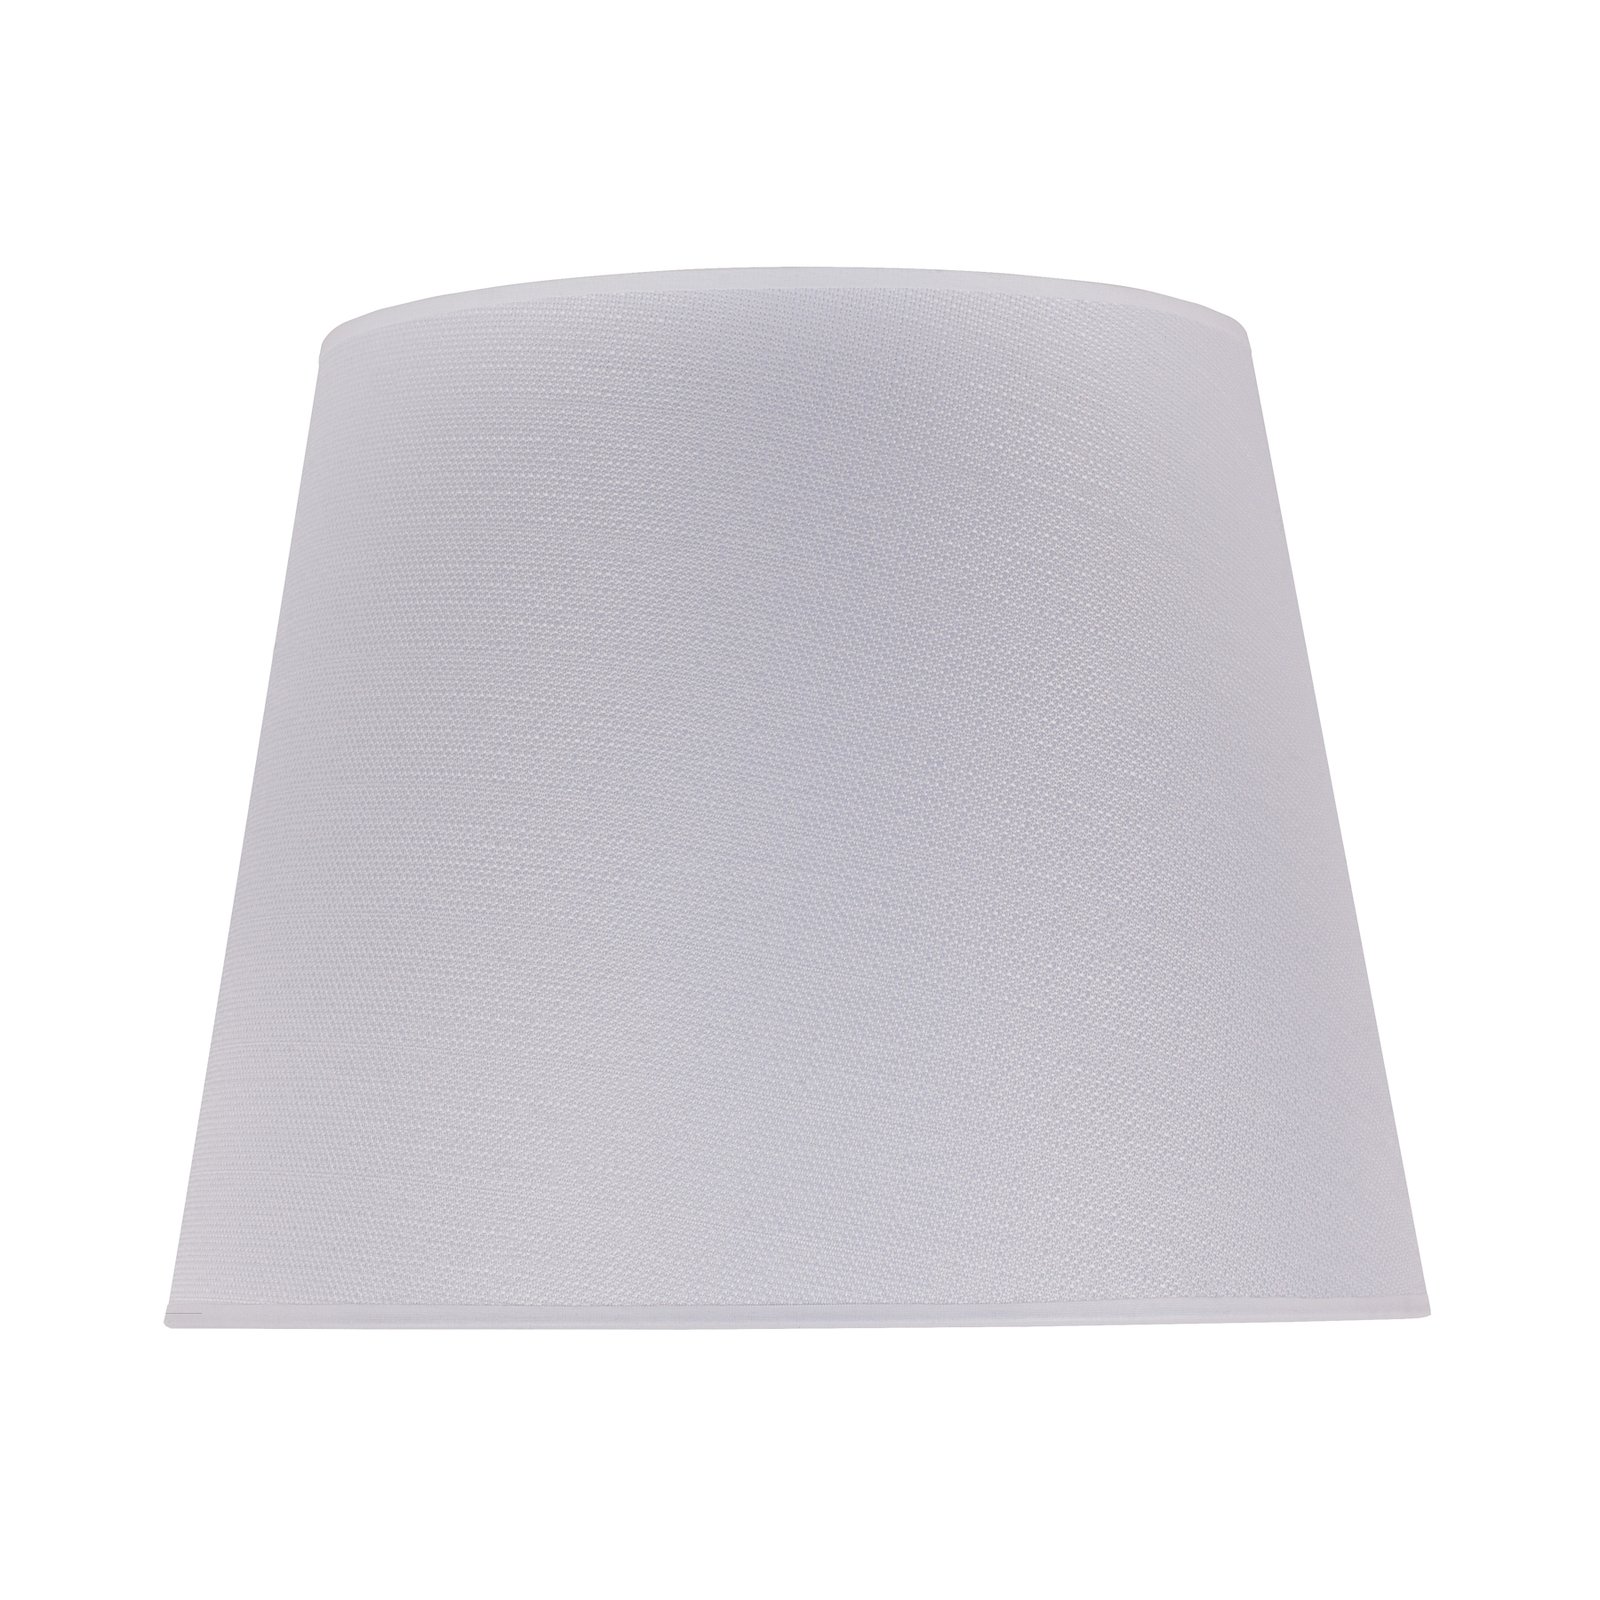 Classic L floor lamp lampshade, veroni white